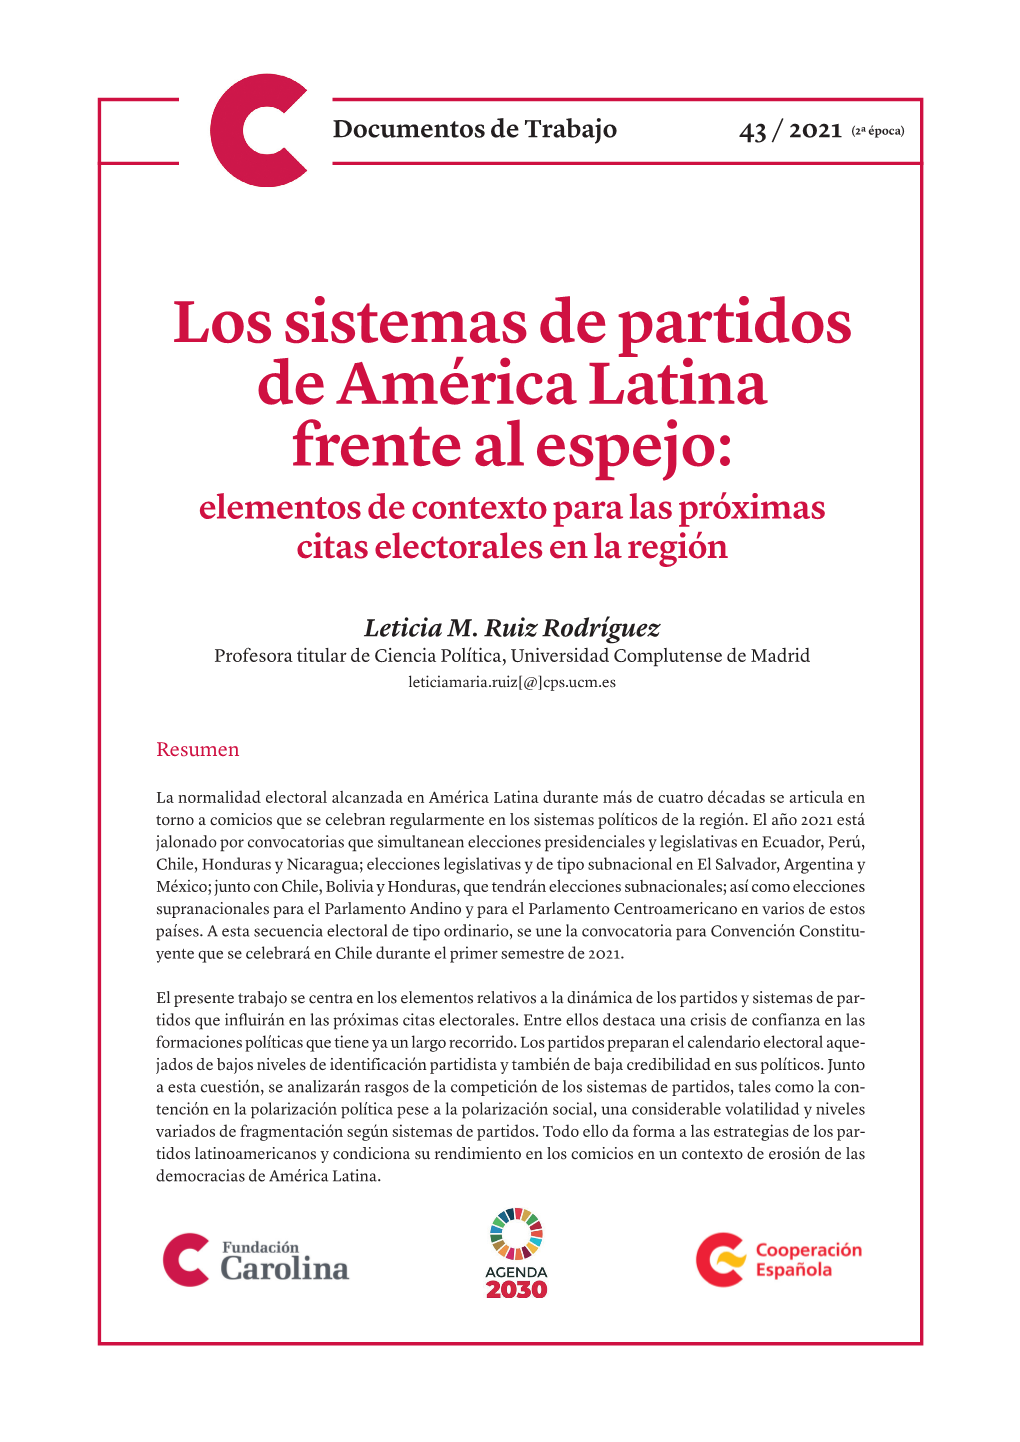 Los Sistemas De Partidos De América Latina Frente Al Espejo: Elementos De Contexto Para Las Próximas Citas Electorales En La Región